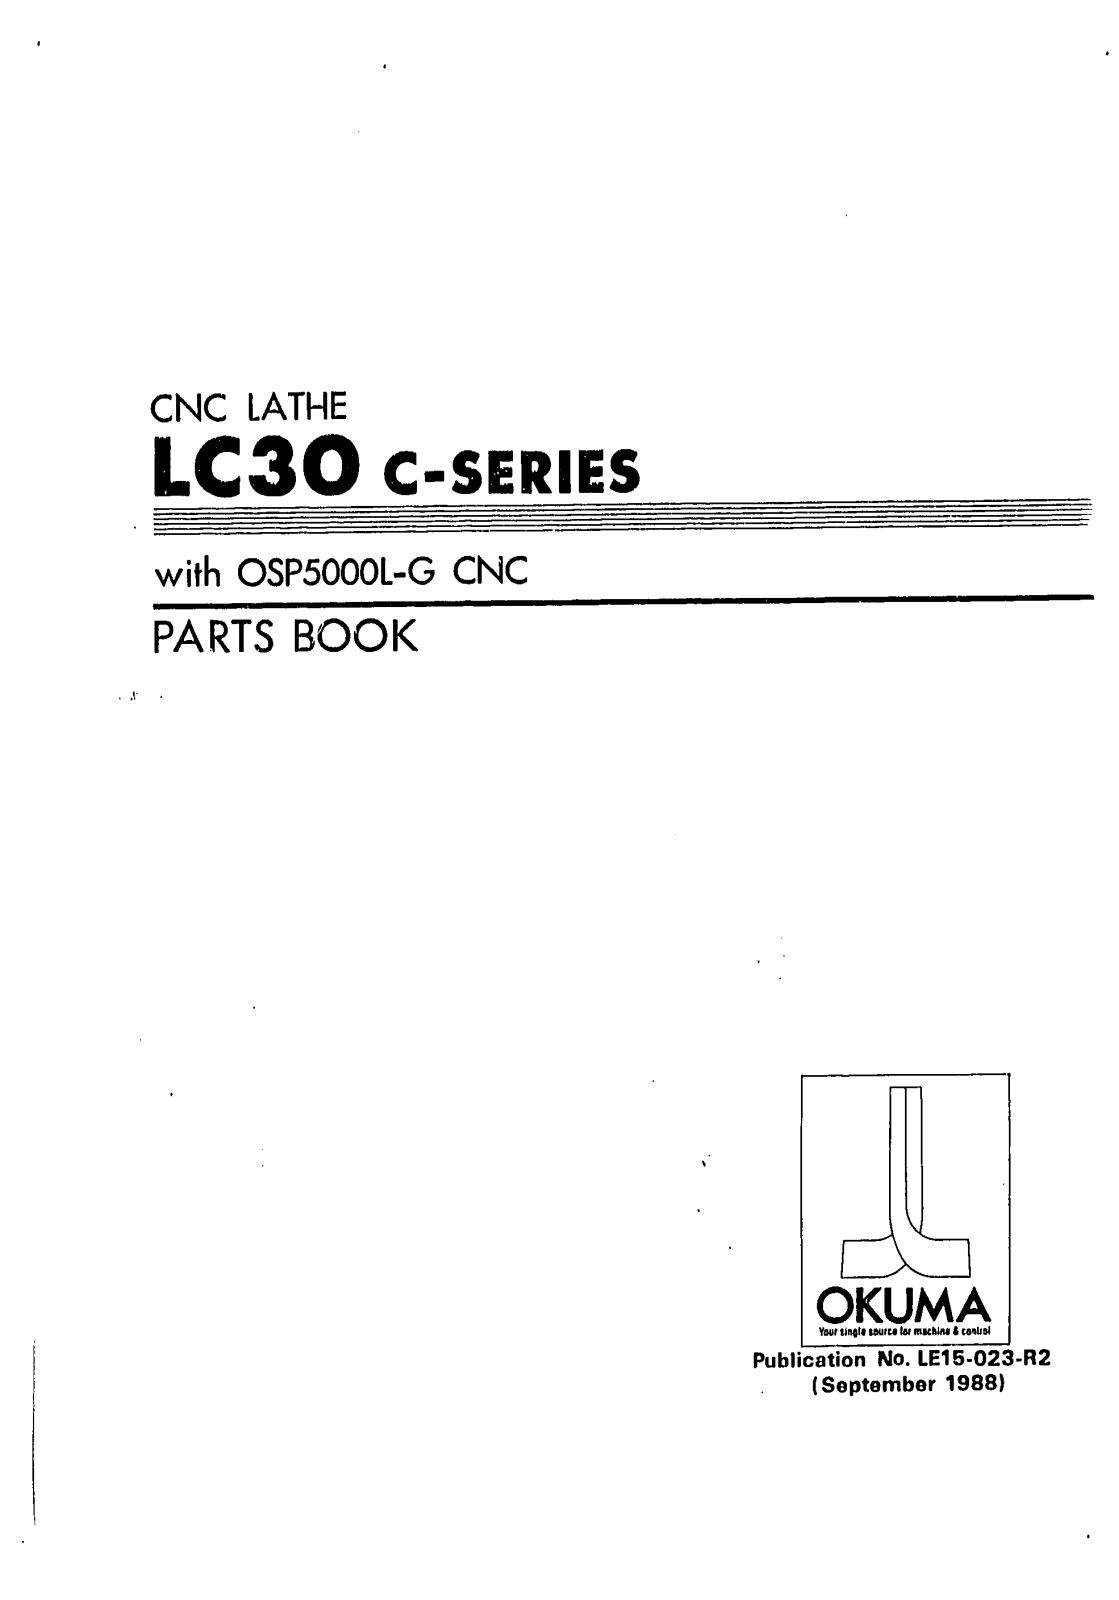 Okuma LC30 Parts